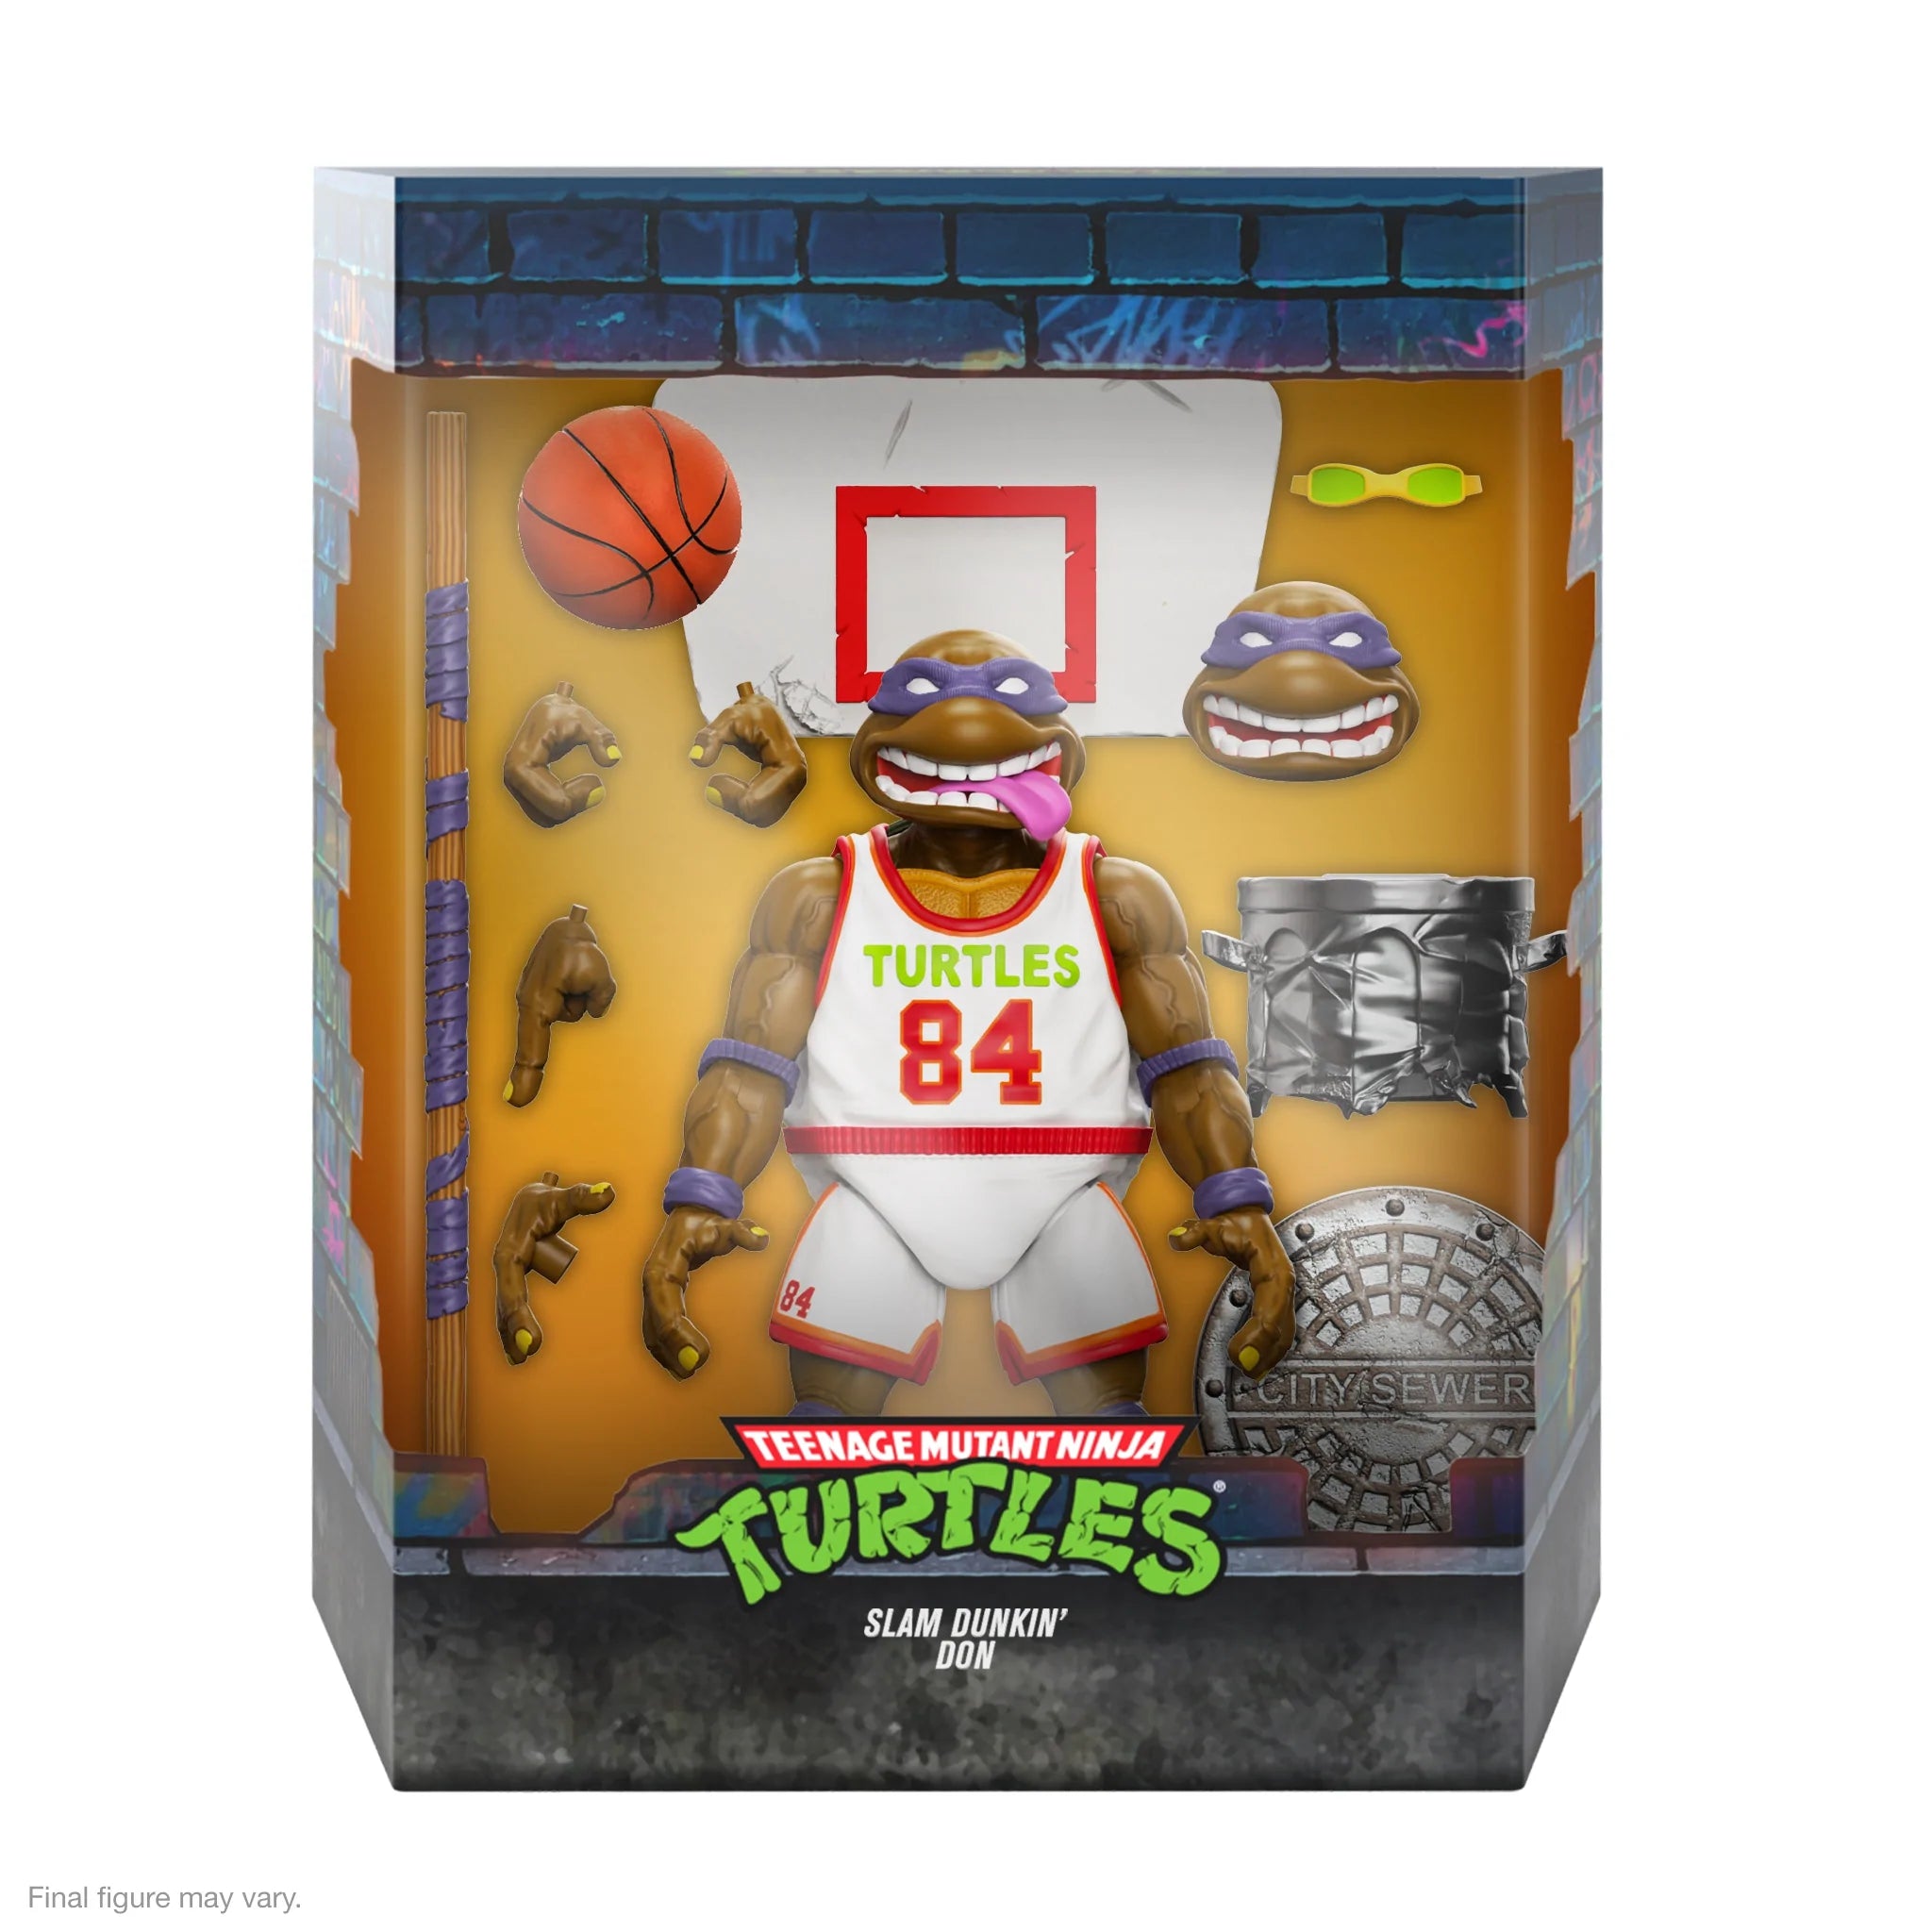 Super7 - Teenage Mutant Ninja Turtles ULTIMATES! - Wave 9 - Slam Dunkin' Don - Marvelous Toys